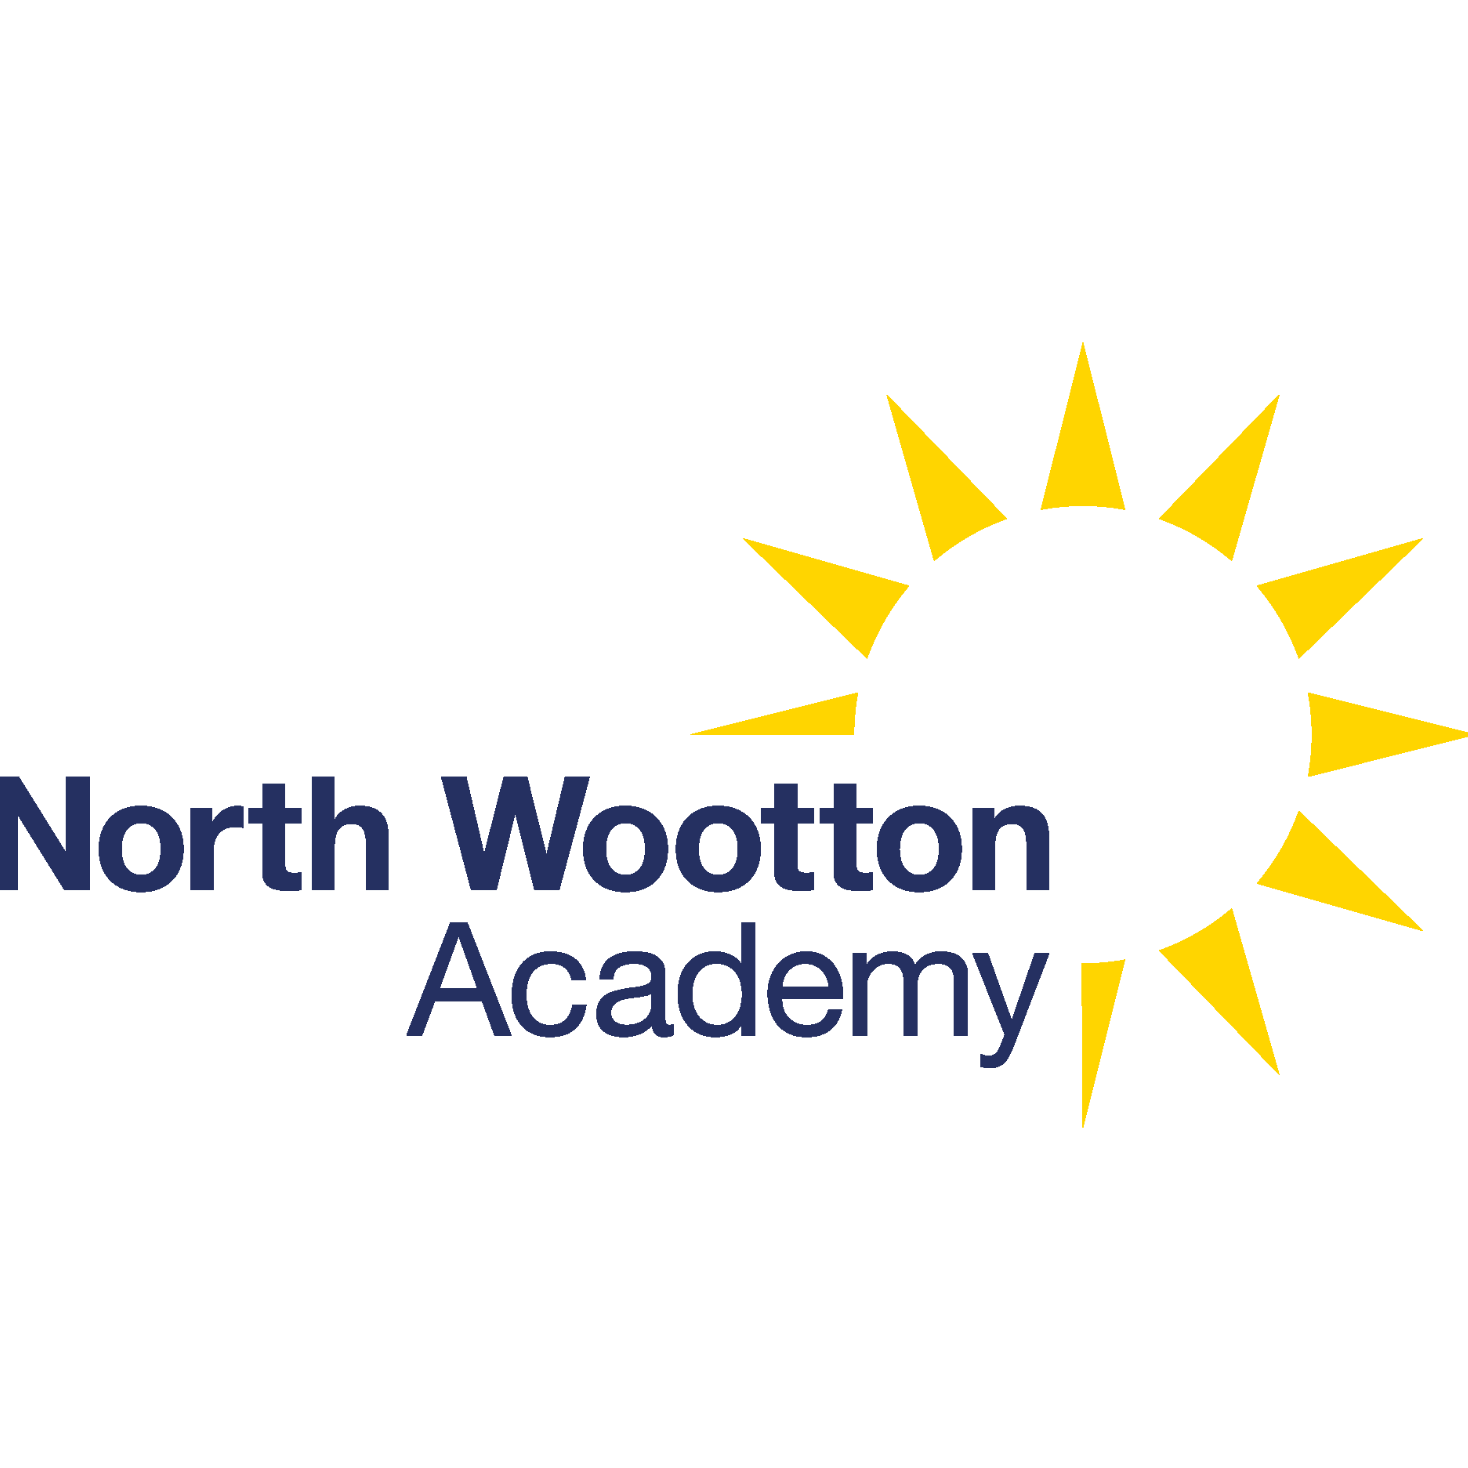 North Wootton Academy logo